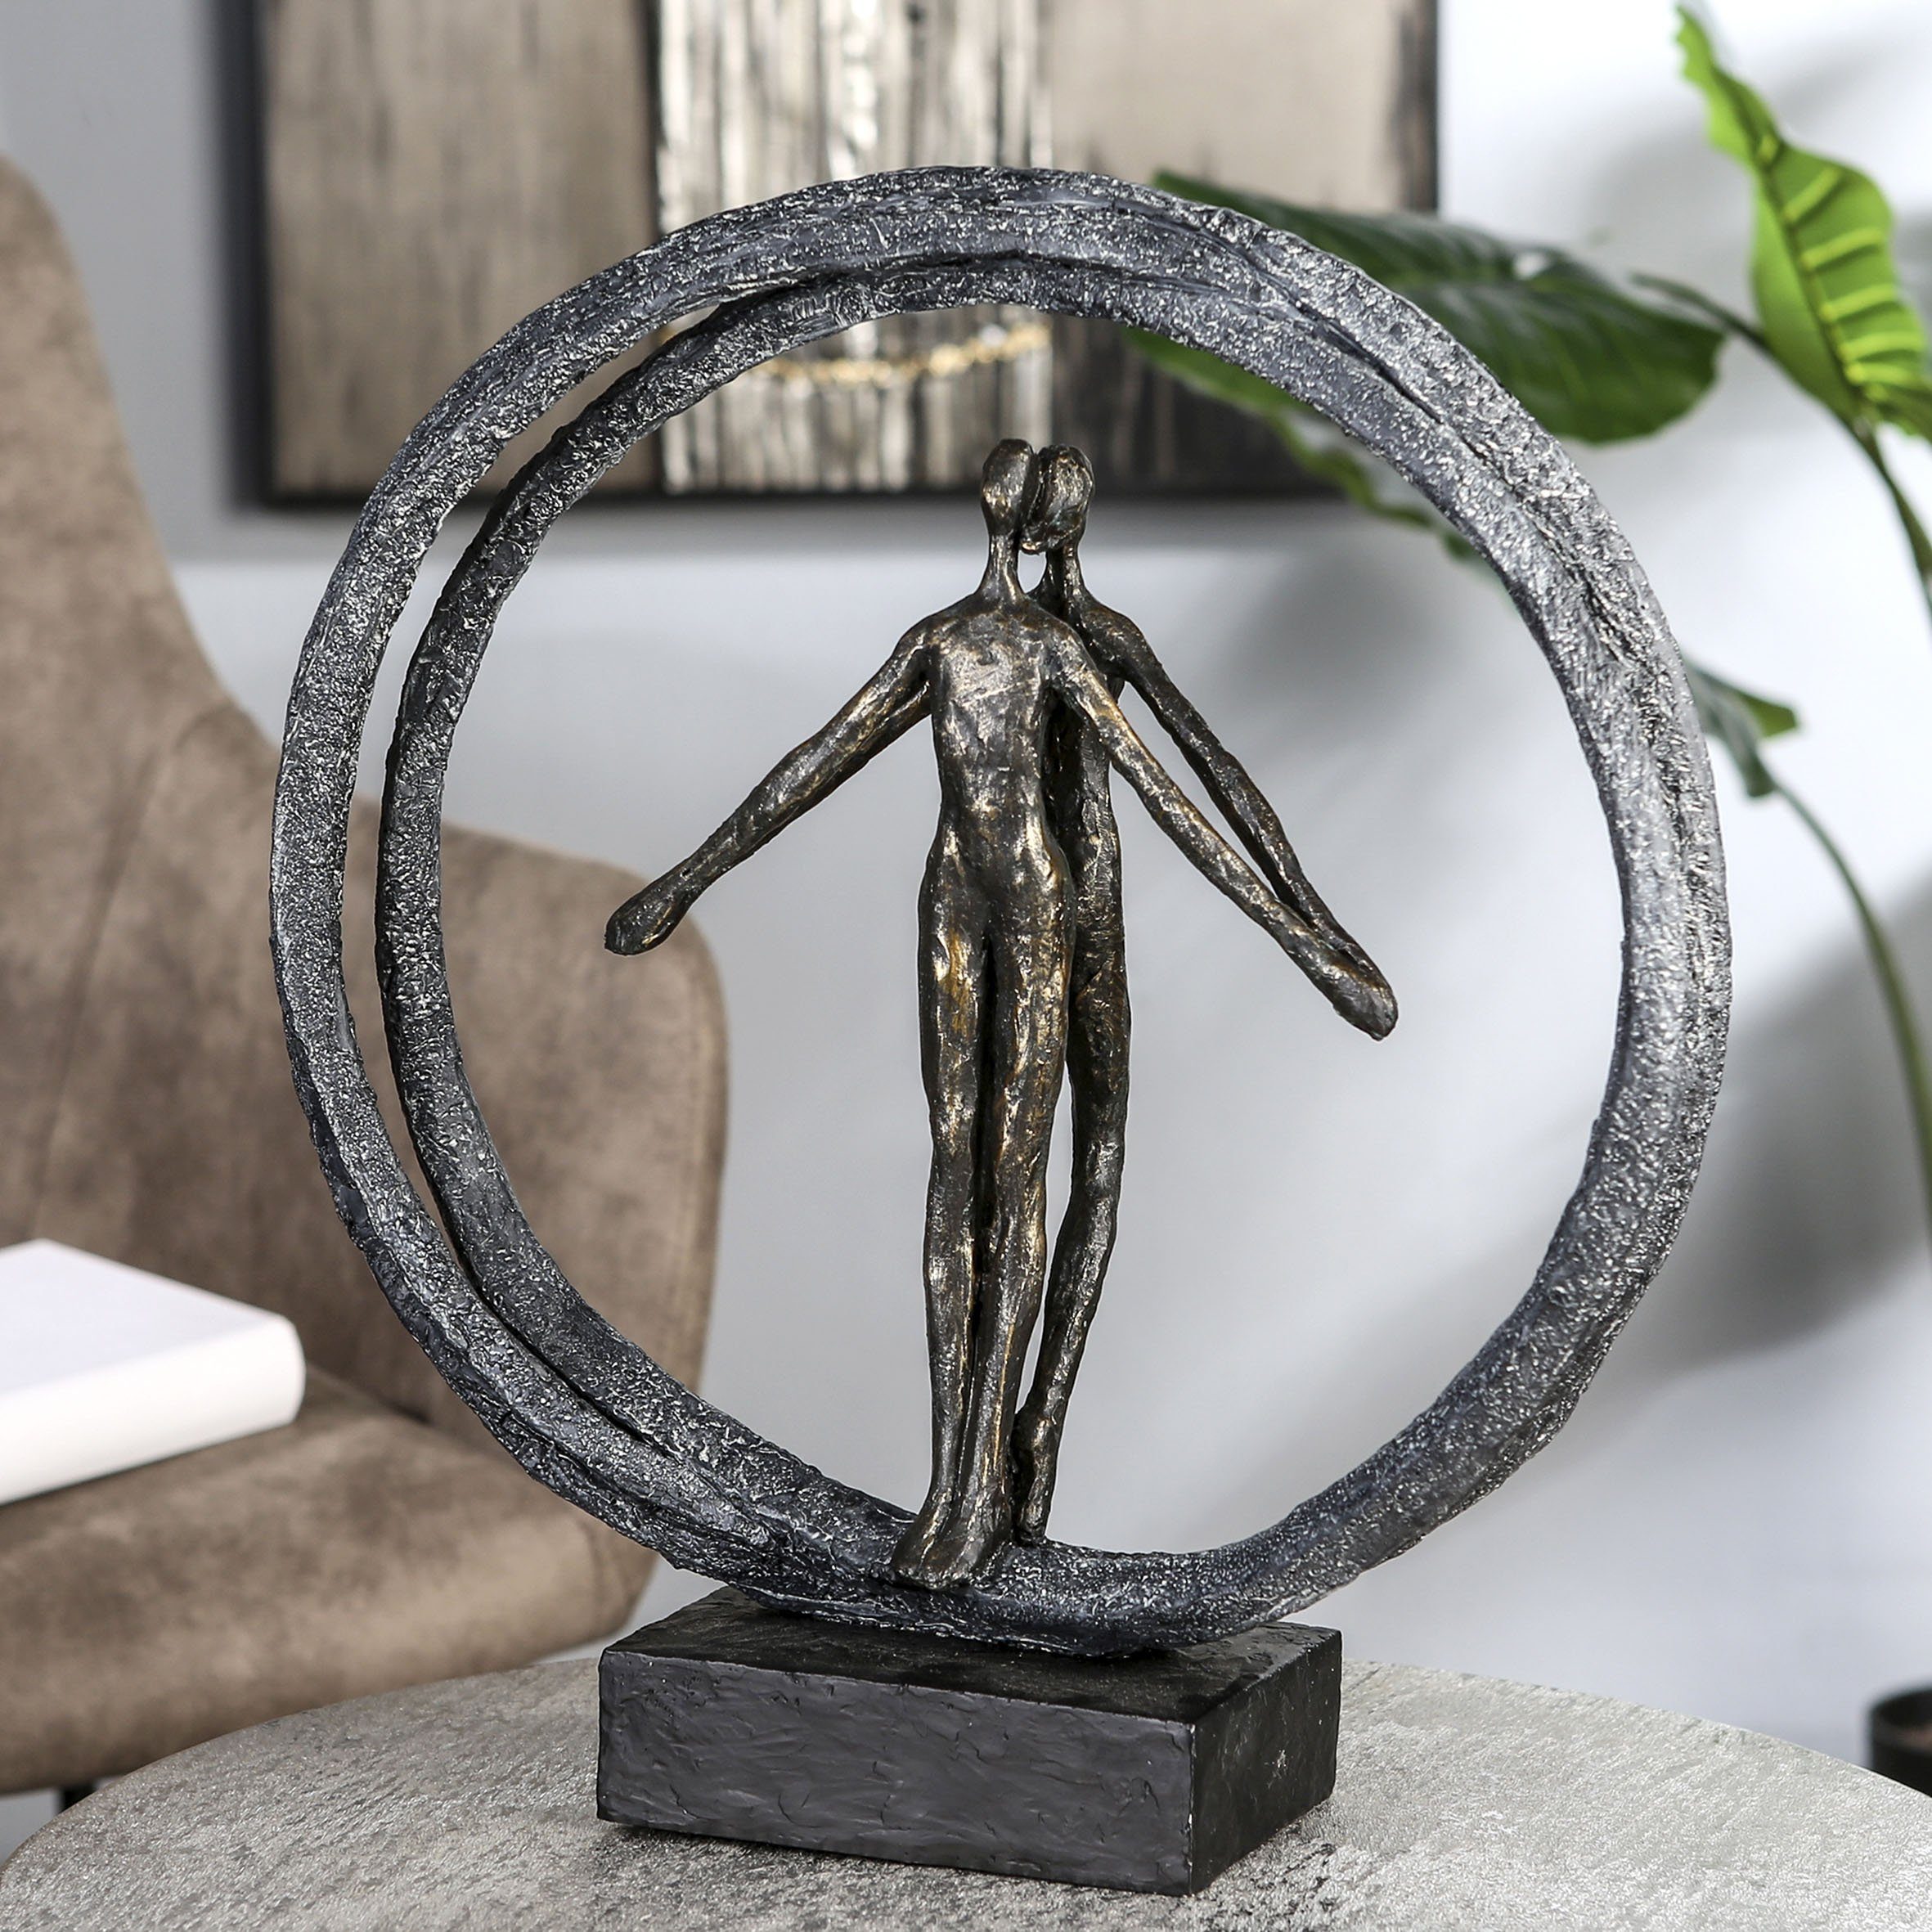 Casablanca by Gilde Decoratief figuur Sculptuur paar in ring, bronskleurig/zwart Decoratief object, hoogte 40 cm, paartje in ring, met teksthanger, woonkamer (1 stuk)